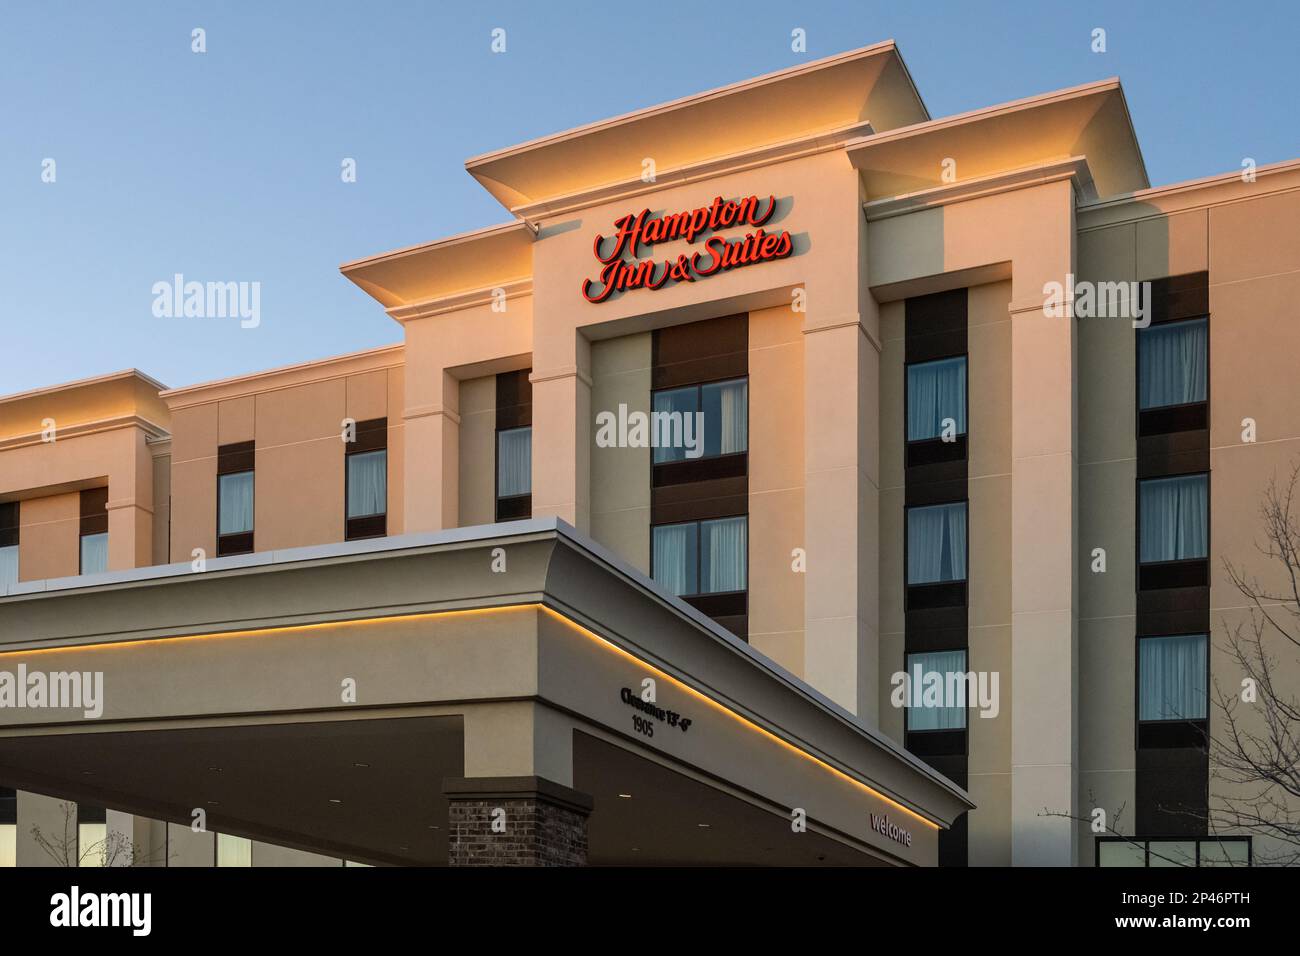 Hampton Inn & Suites at sunset in Snellville, Georgia. (USA) Stock Photo